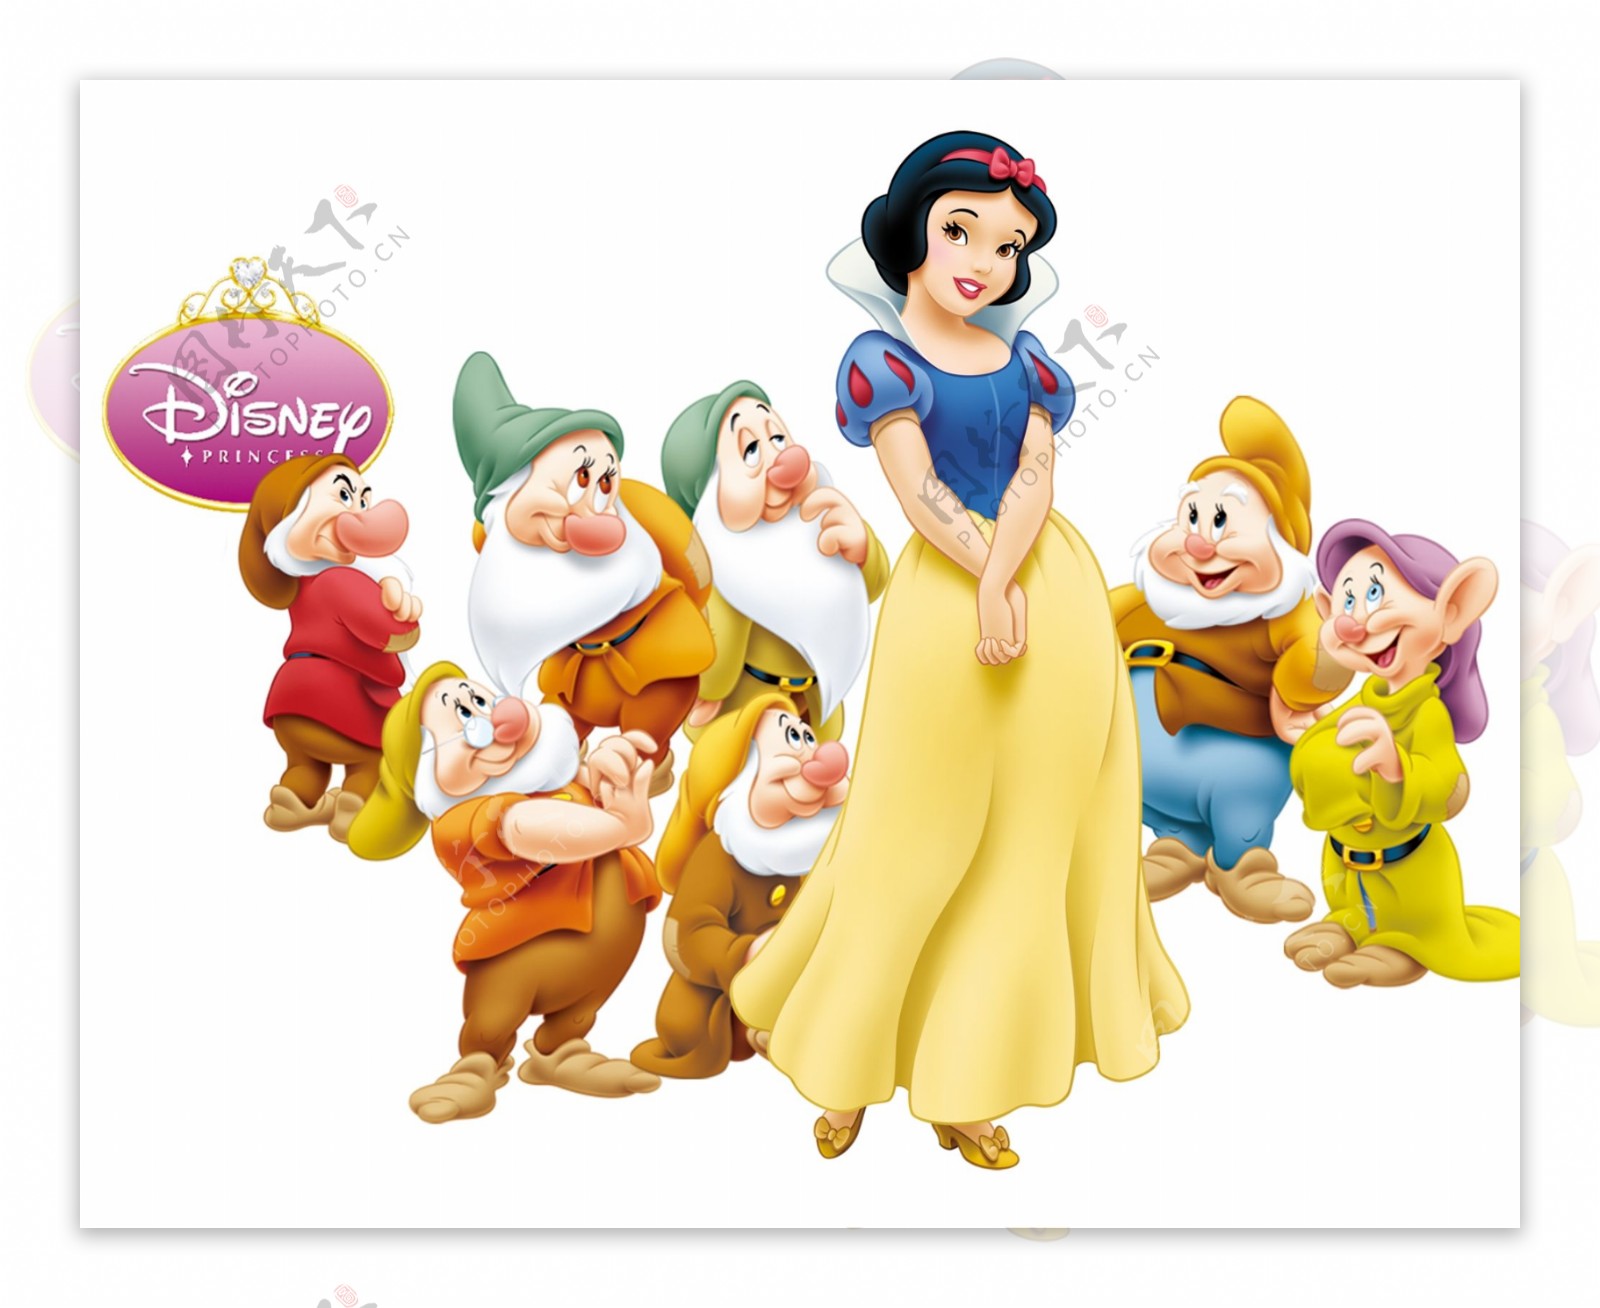 《白雪公主和七个小矮人》_图片_互动百科